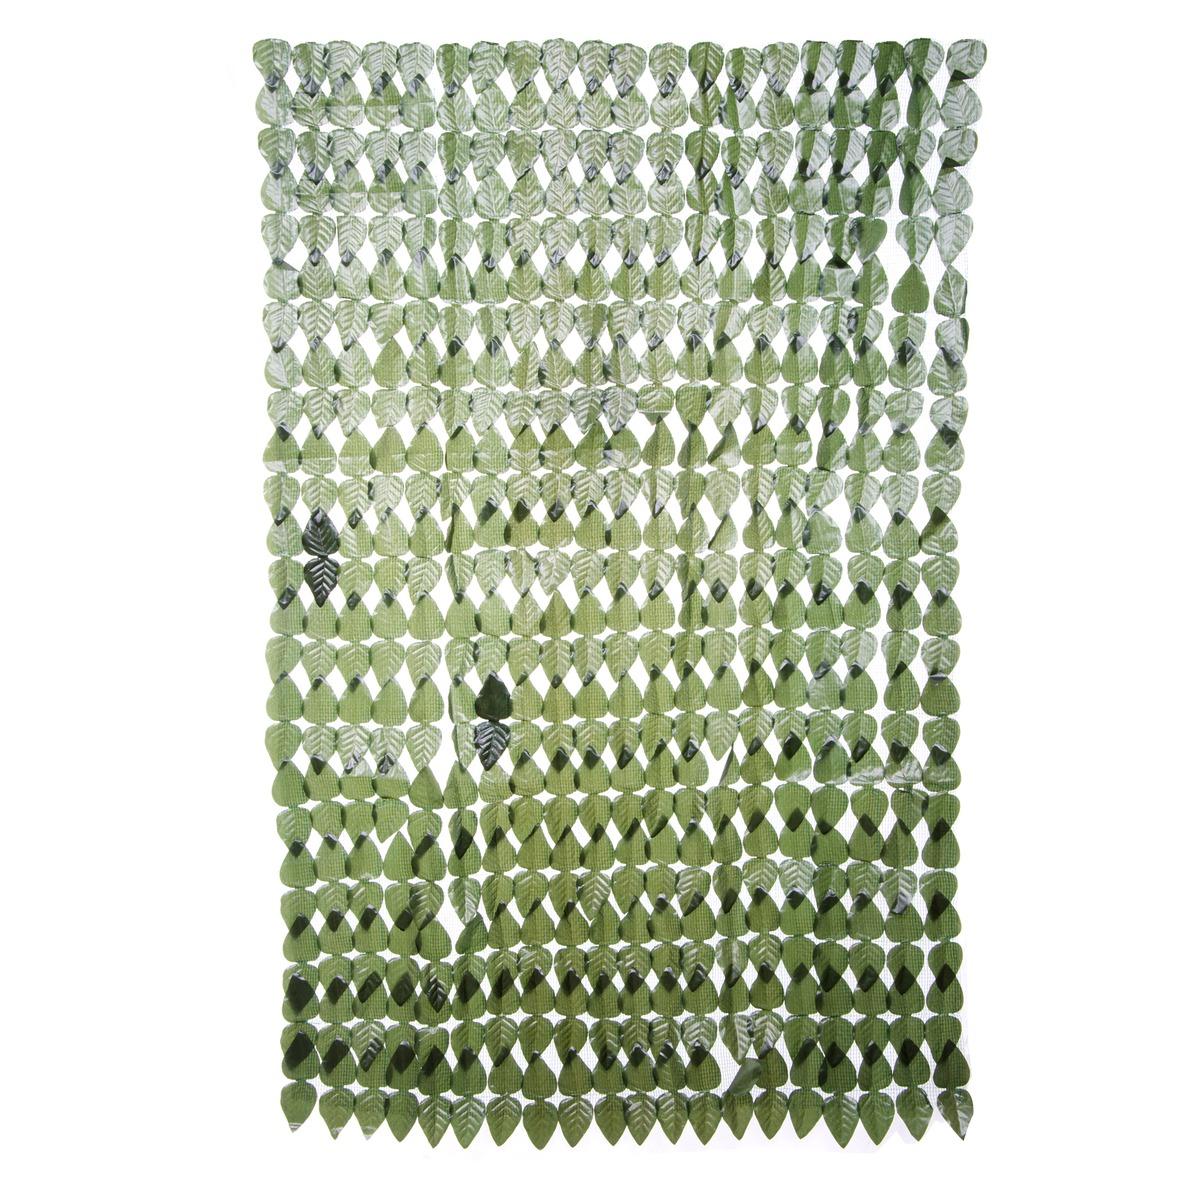 Brise-vue synthétique avec feuilles - 2 x H 1 m - Vert